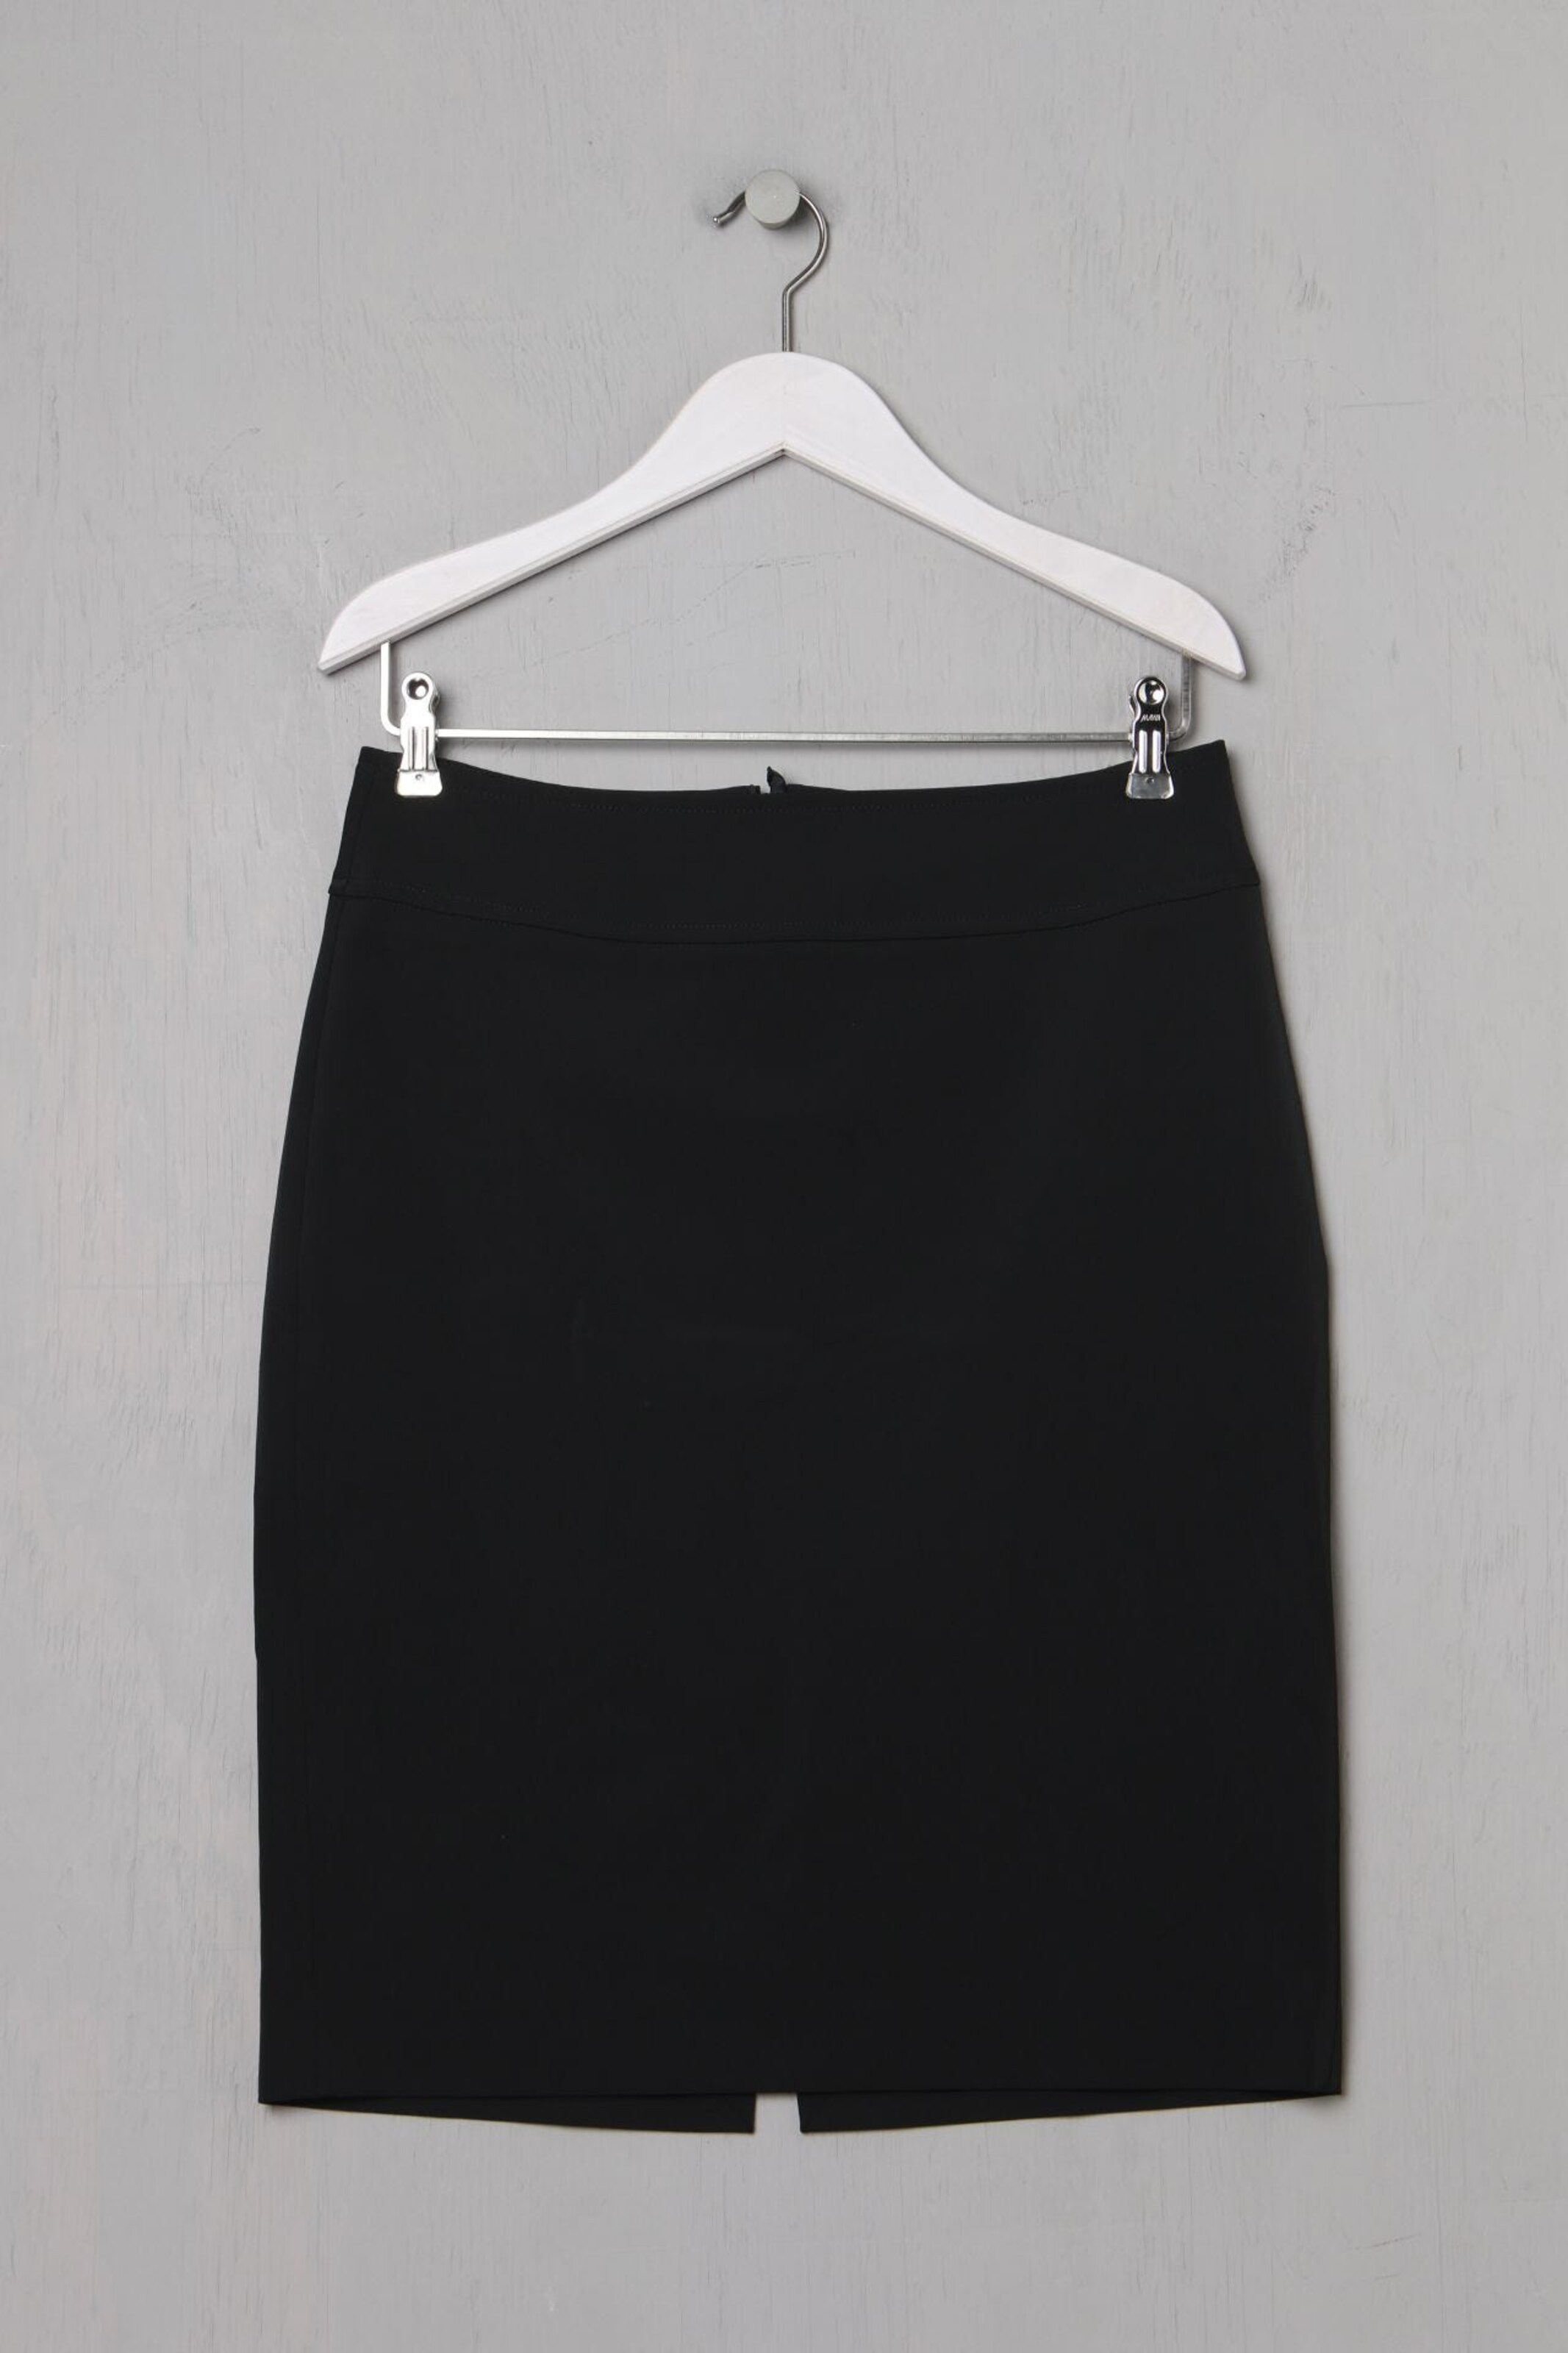 Primark Black Pencil Skirt | eBay